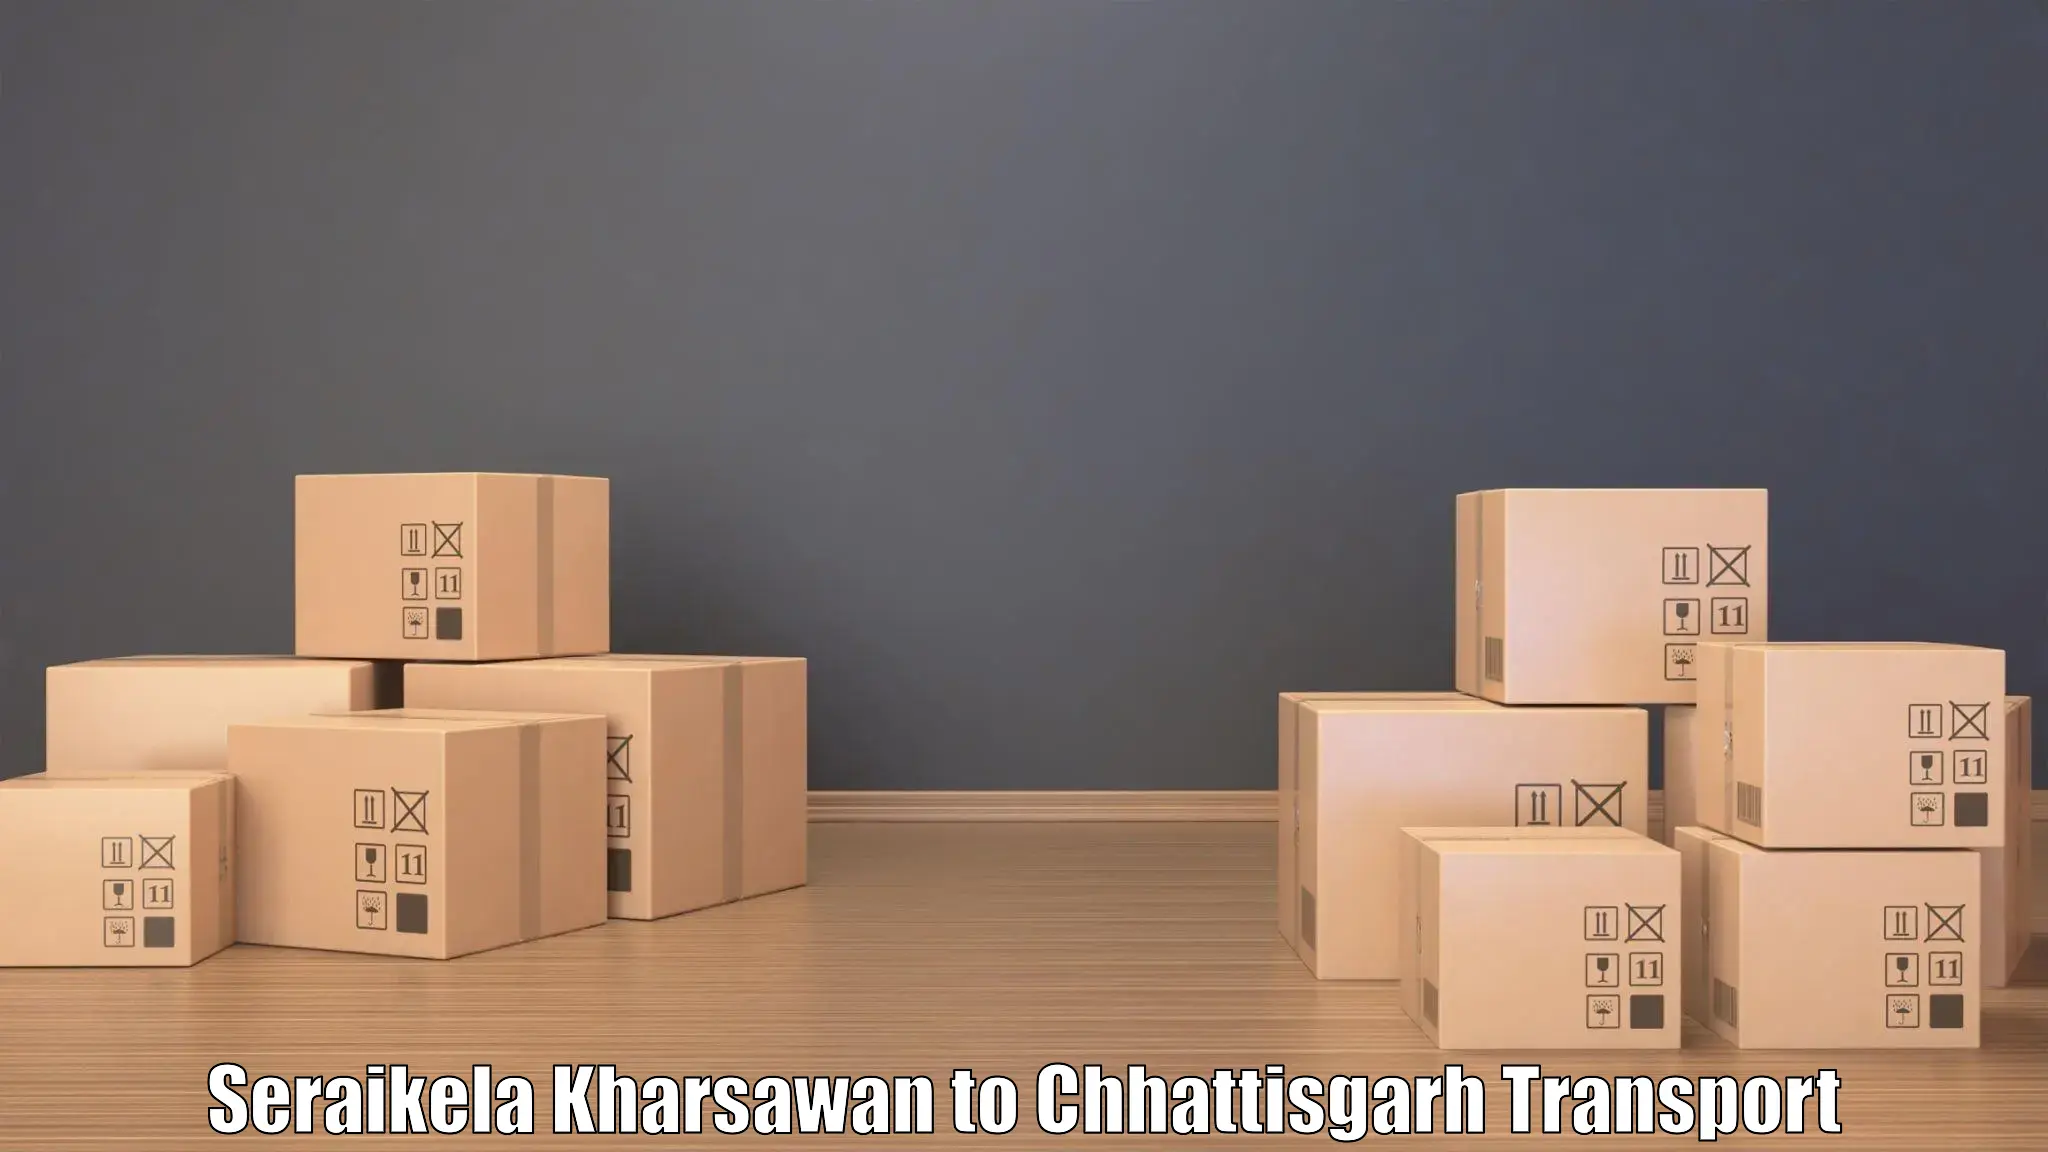 Intercity transport Seraikela Kharsawan to Raigarh Chhattisgarh